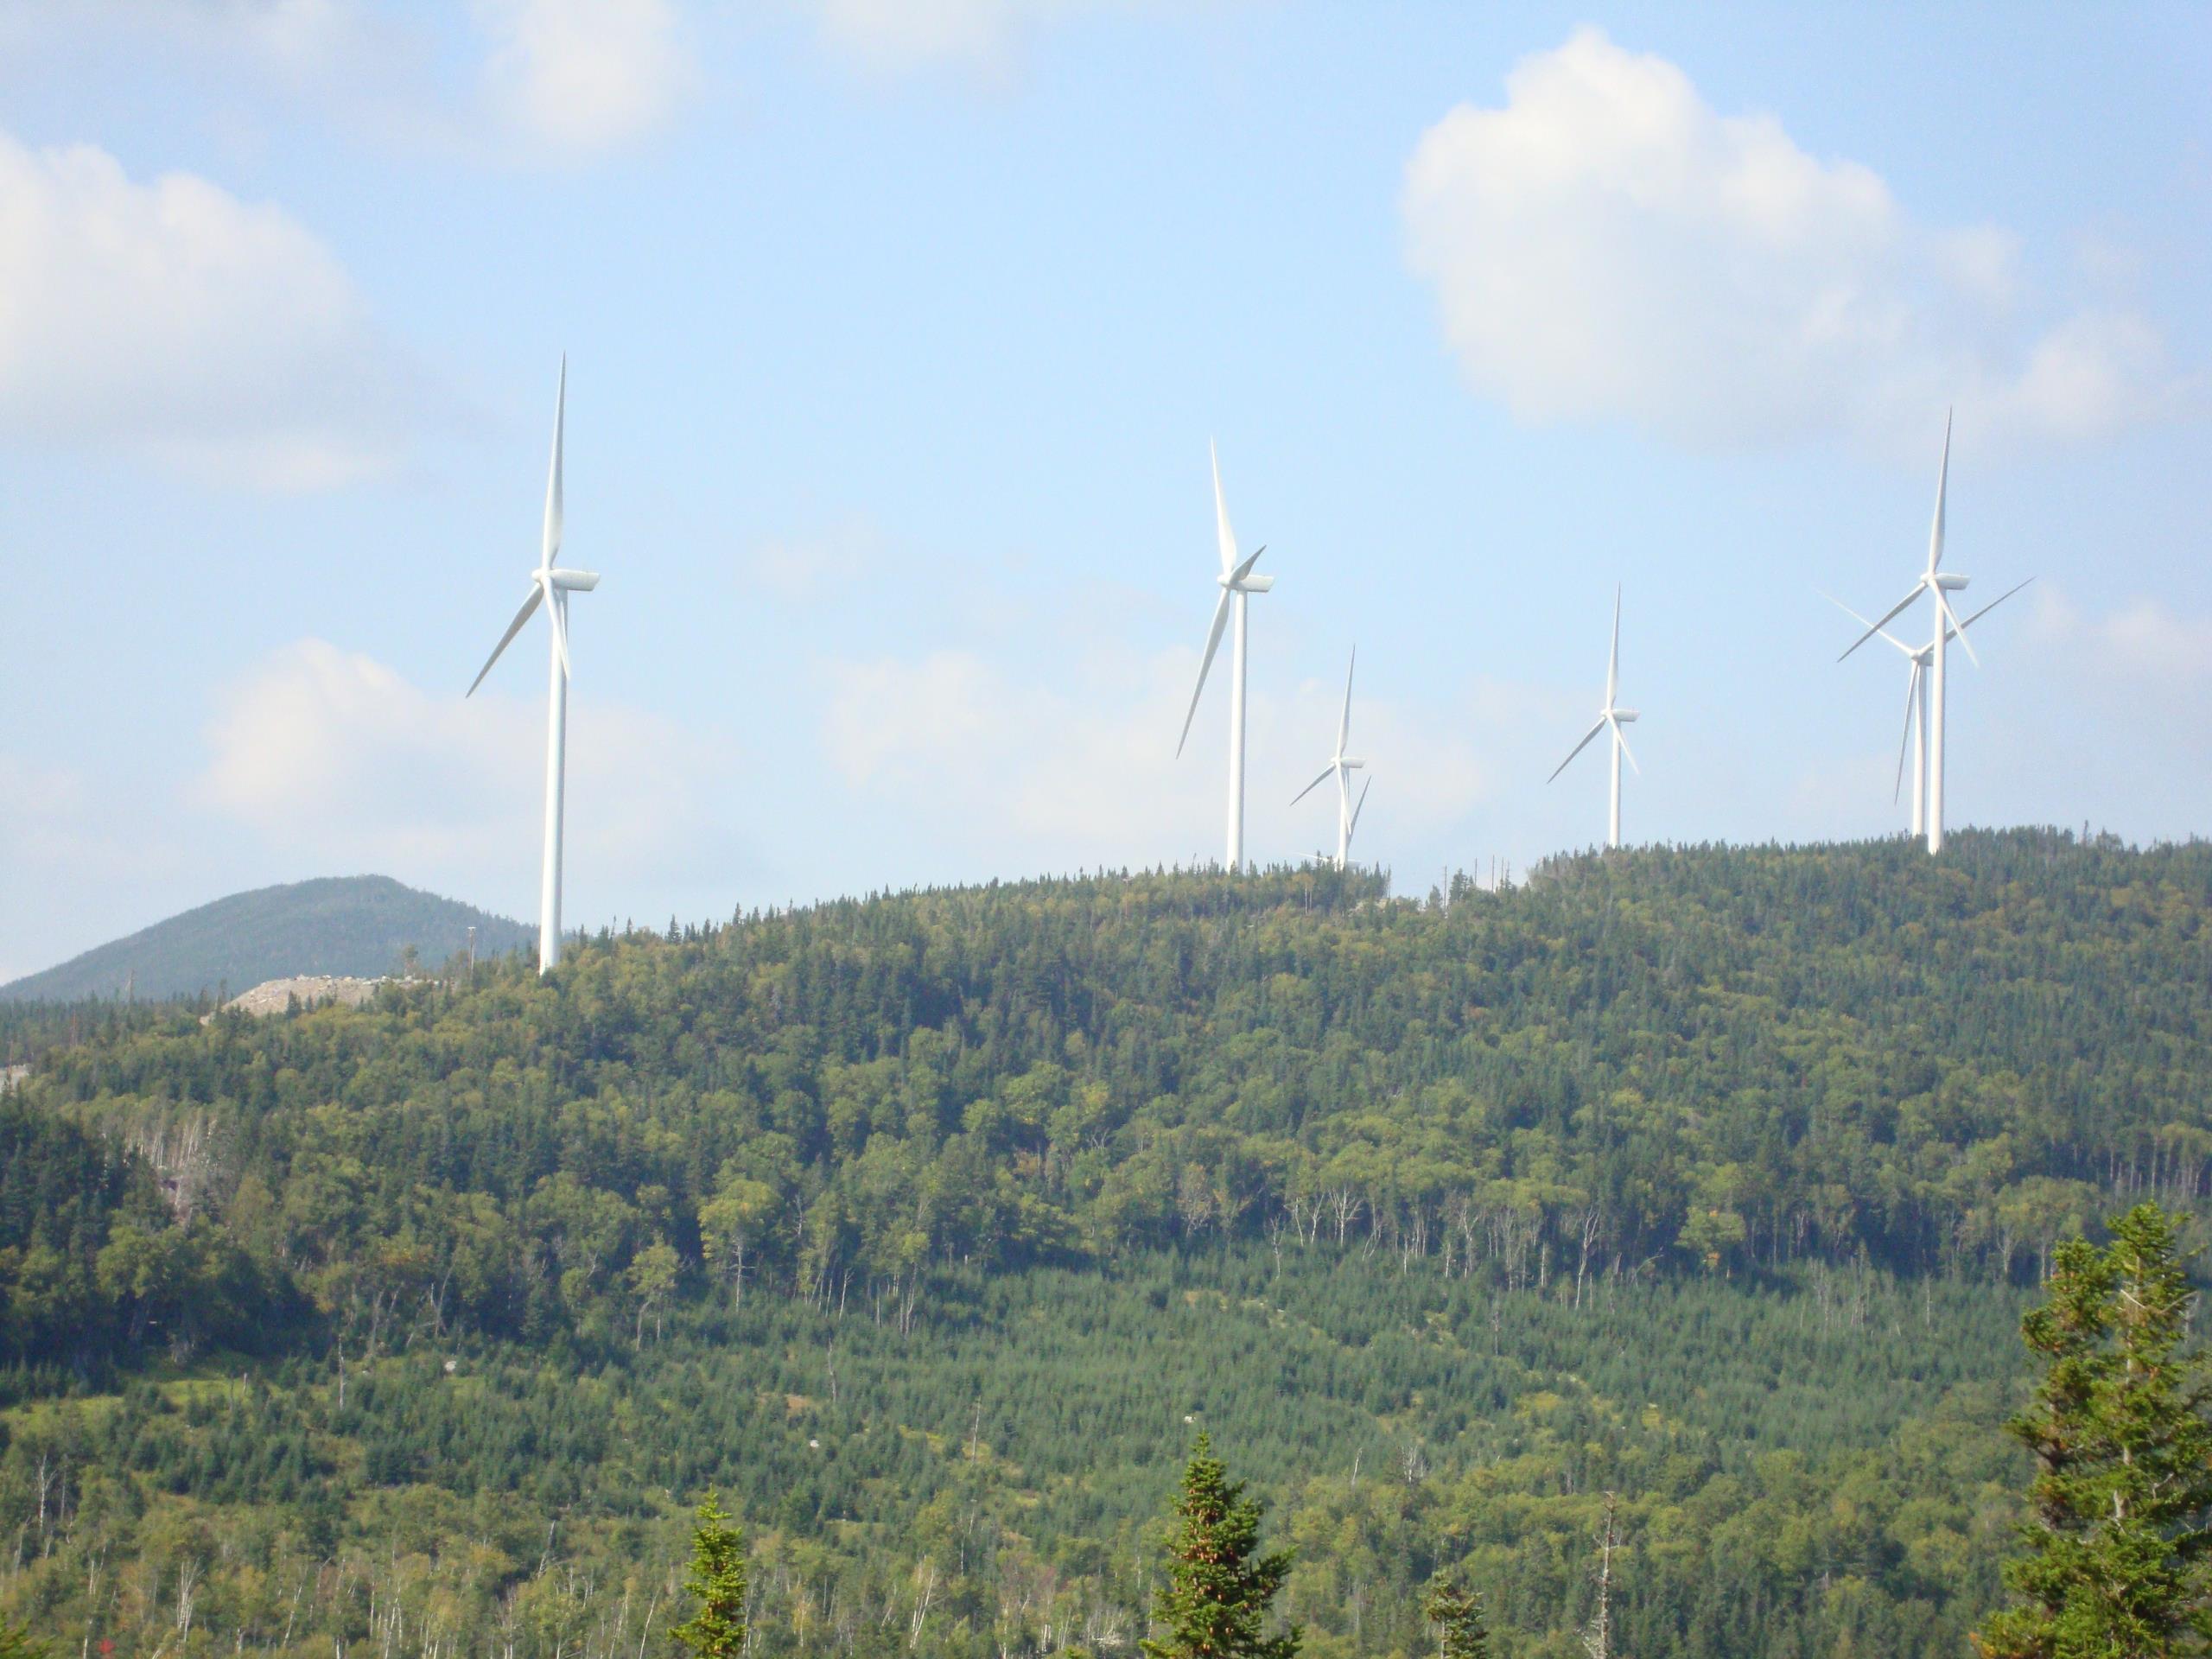 Trees and wind turbines